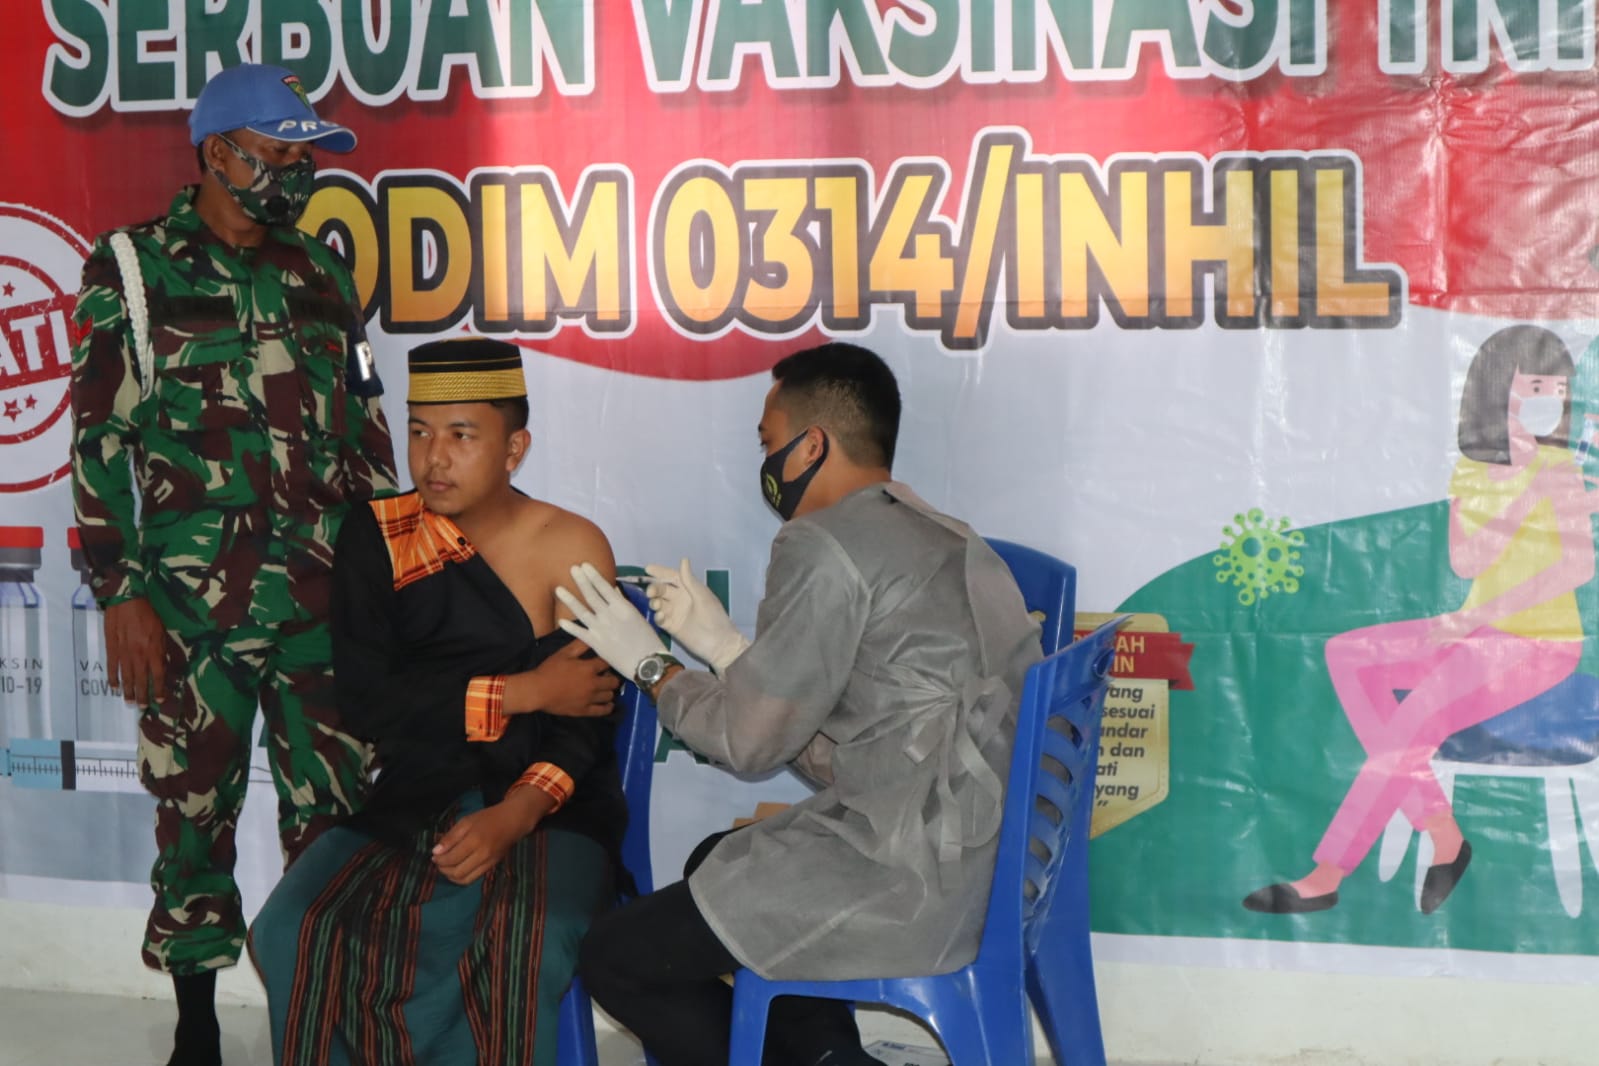 Ponpes Daarur Rahman Tempuling Laksanakan Vaksinasi dari Kodim 0314/Inhil